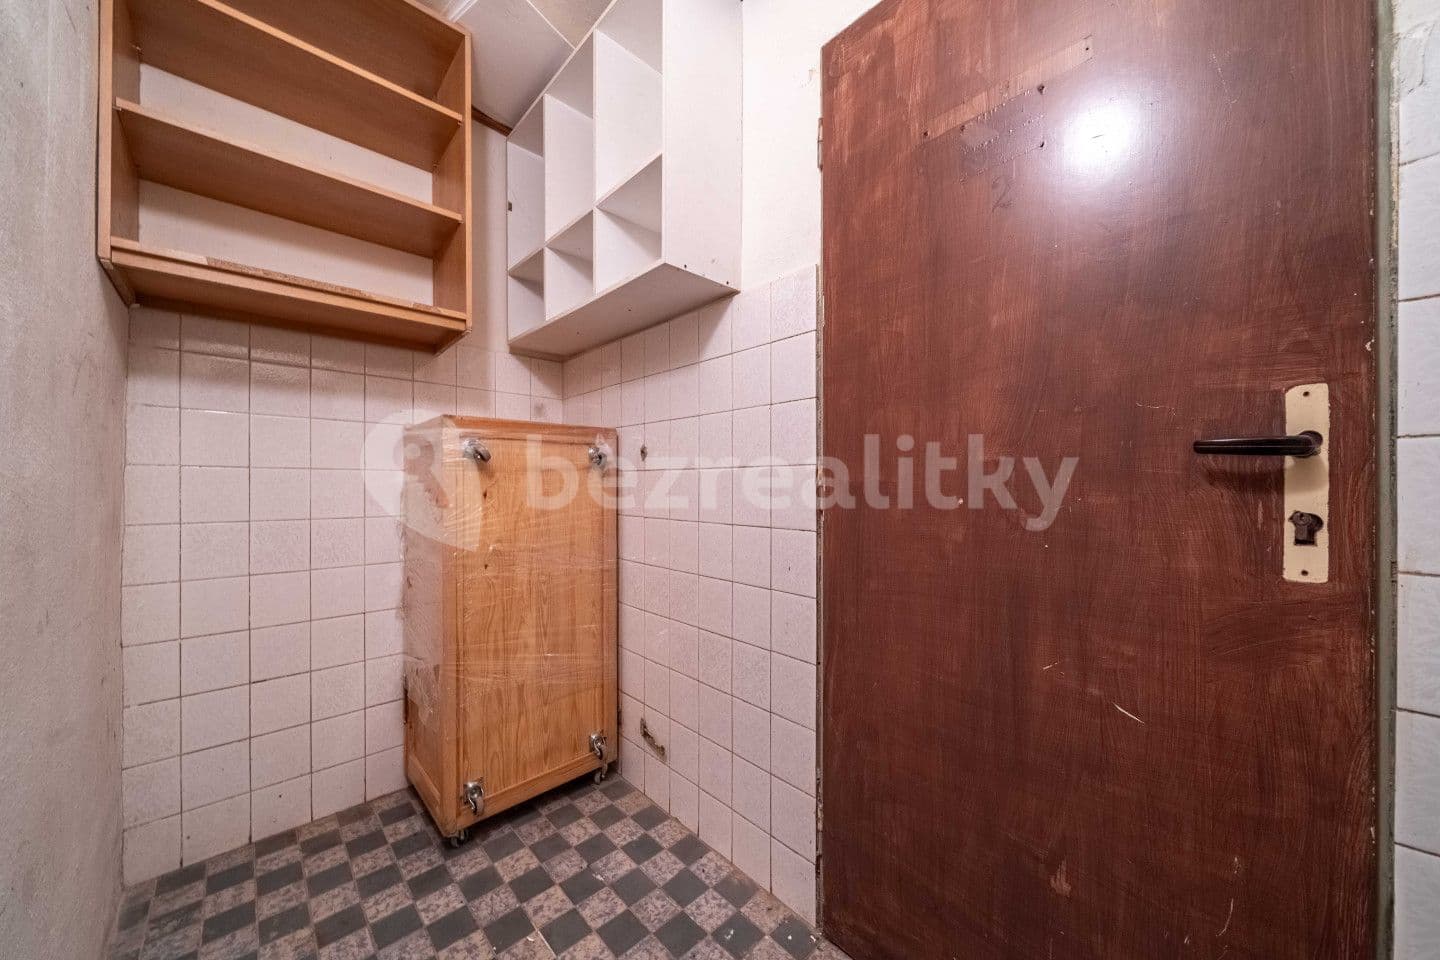 1 bedroom with open-plan kitchen flat for sale, 55 m², Plzeňská, Králův Dvůr, Středočeský Region